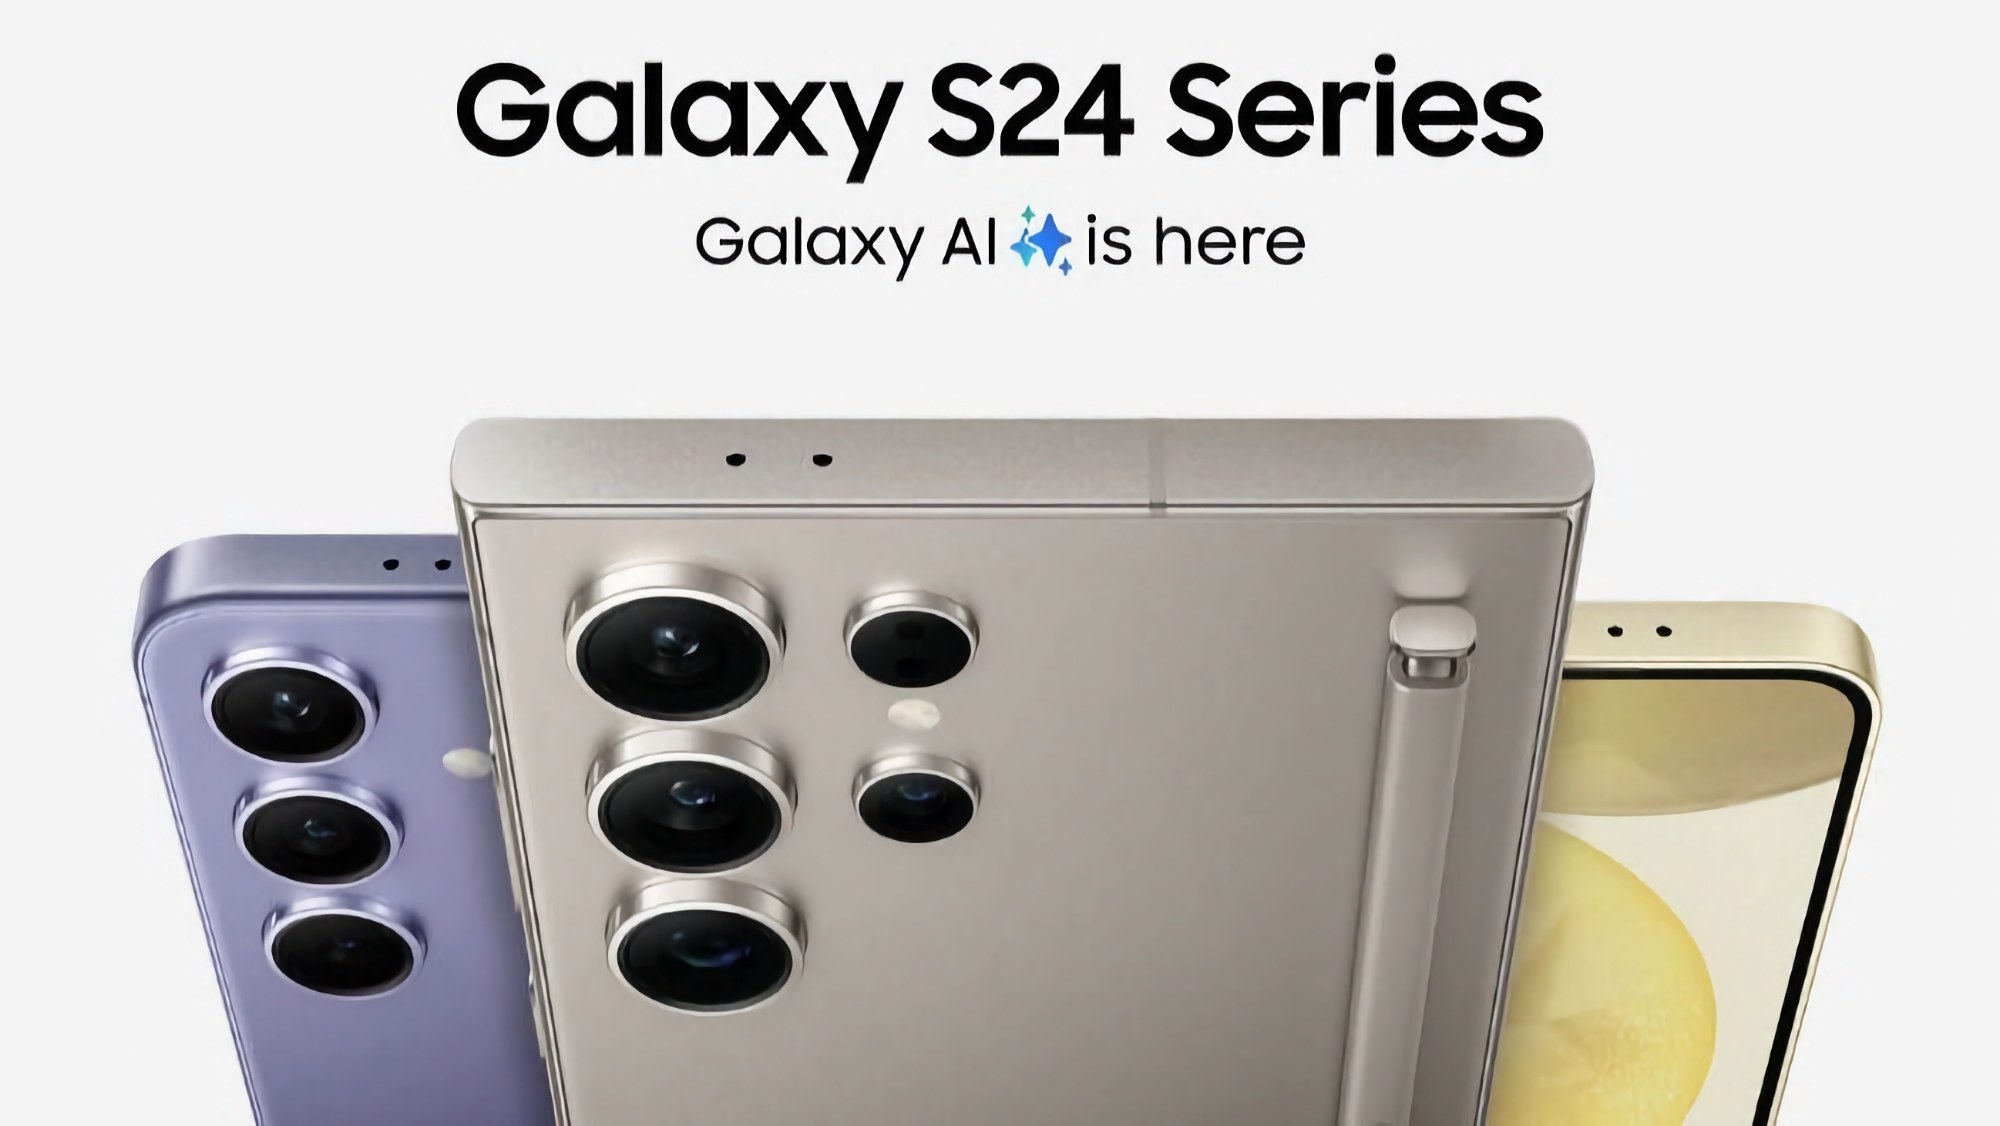 Samsung Galaxy S24, Galaxy S24+ y Galaxy S24 Ultra ya están disponibles para pre-pedido en Amazon, con una eGift Card con un descuento de hasta 200€.